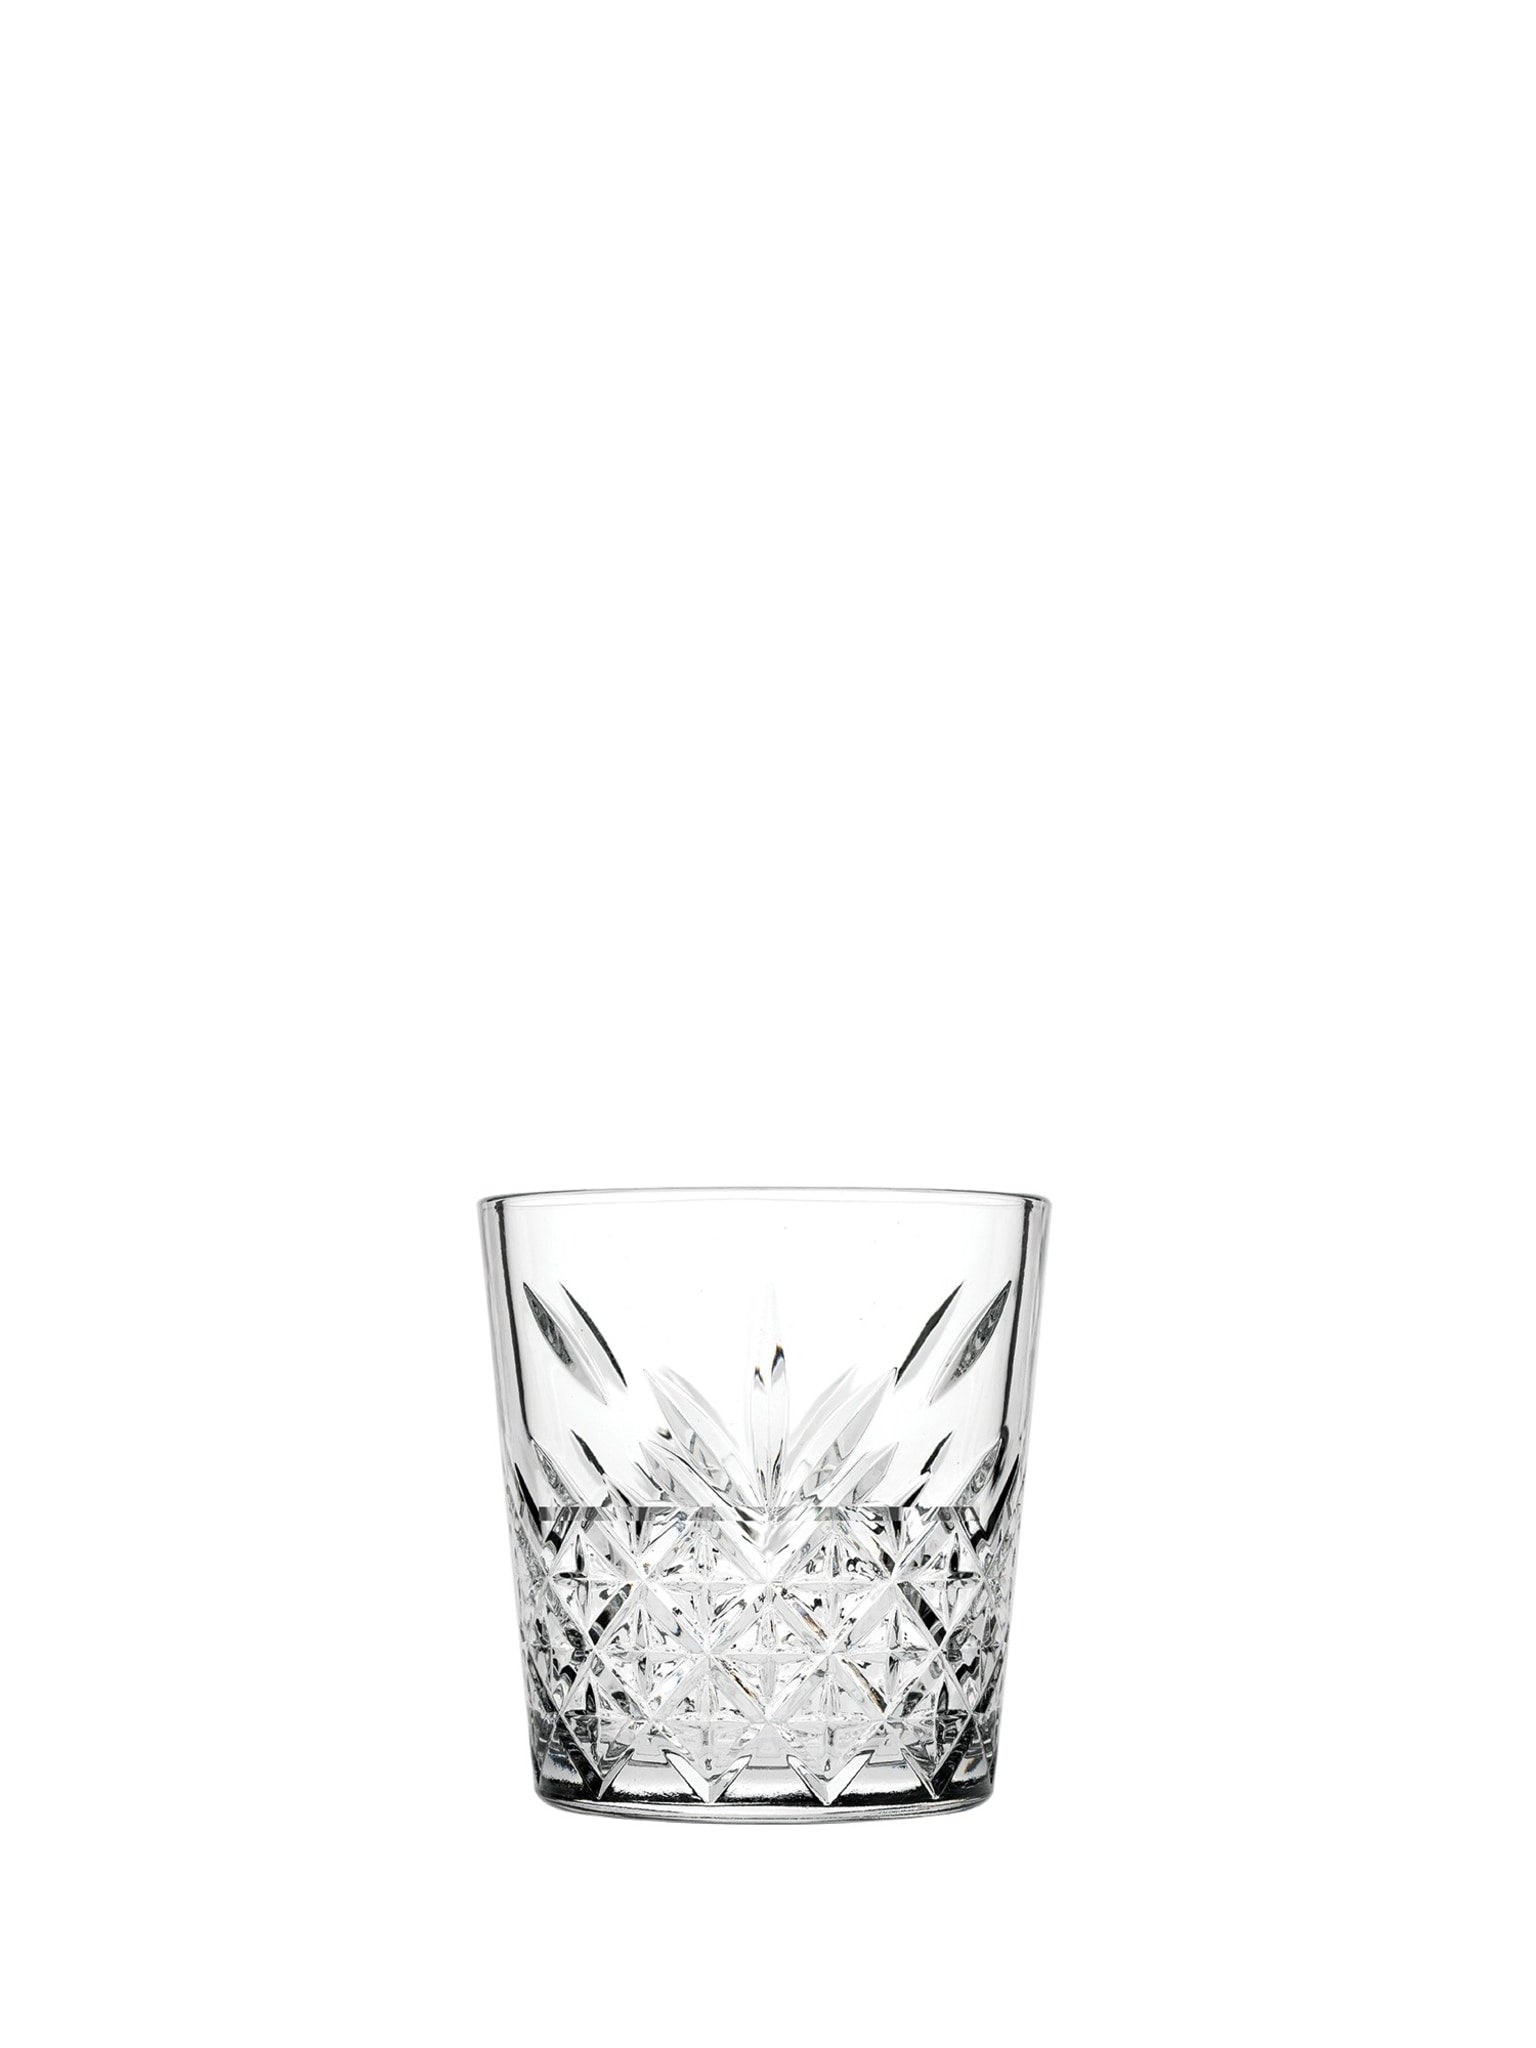 Pasabahce Timeless Stable Whiskyglas (34,5 cl) - et klassisk og tidløst whiskyglas til dine favoritdrikke.